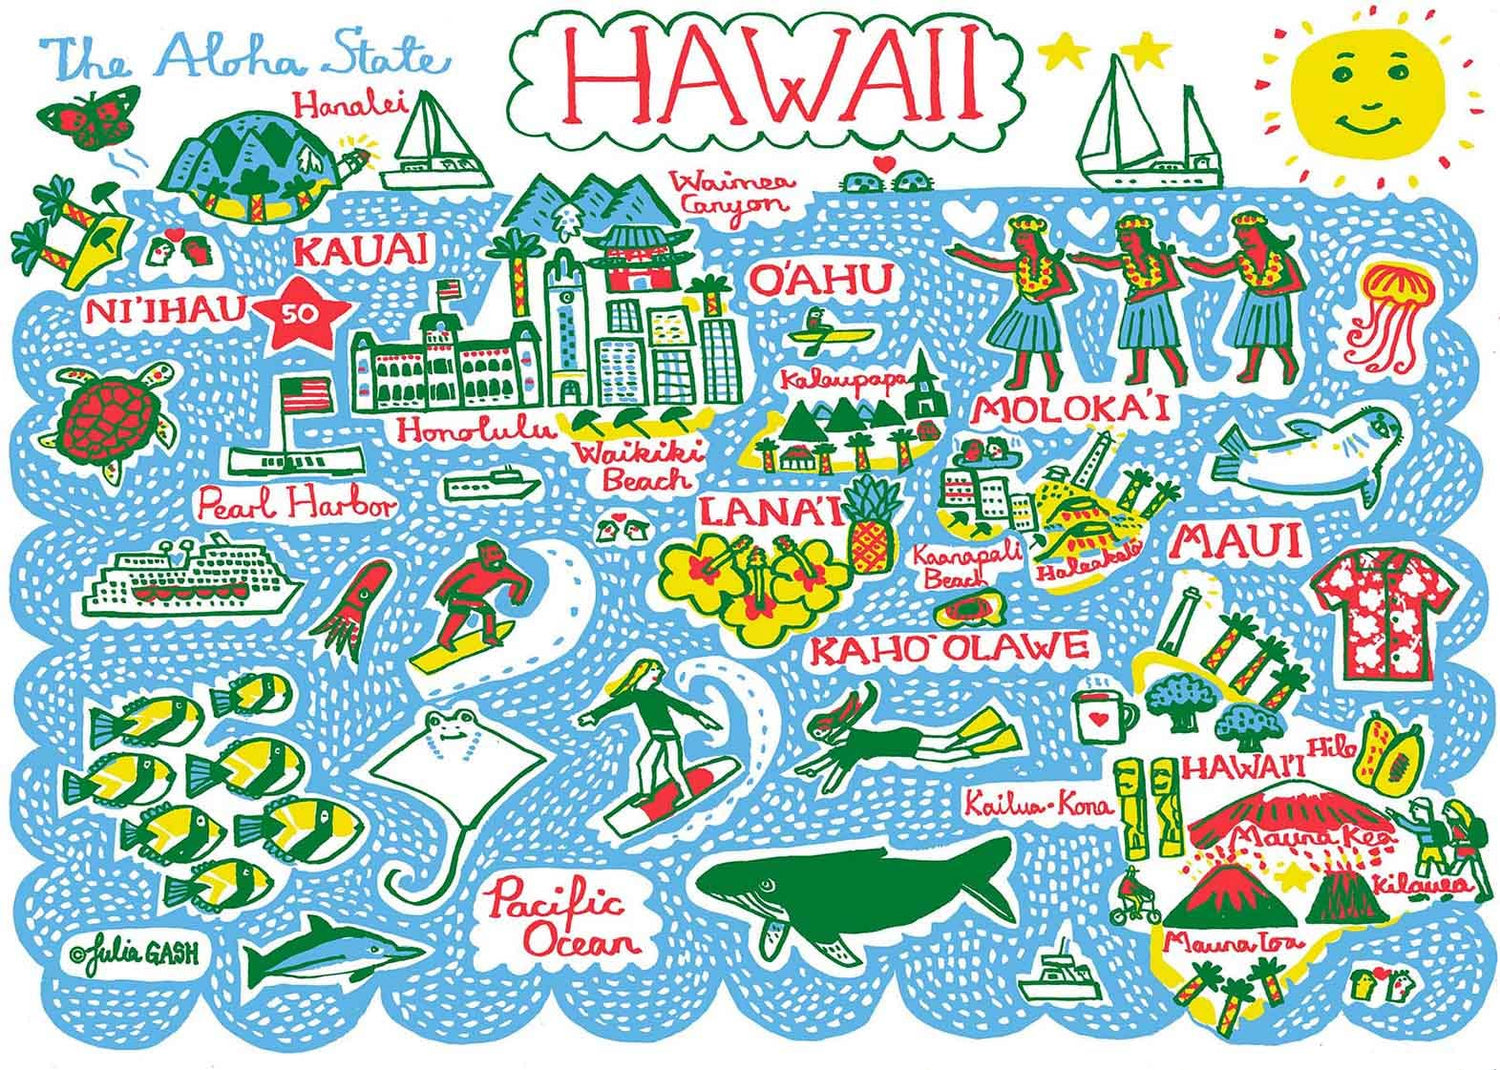 Hawaii Art Print 5x7 - Moon Room Shop and Wellness